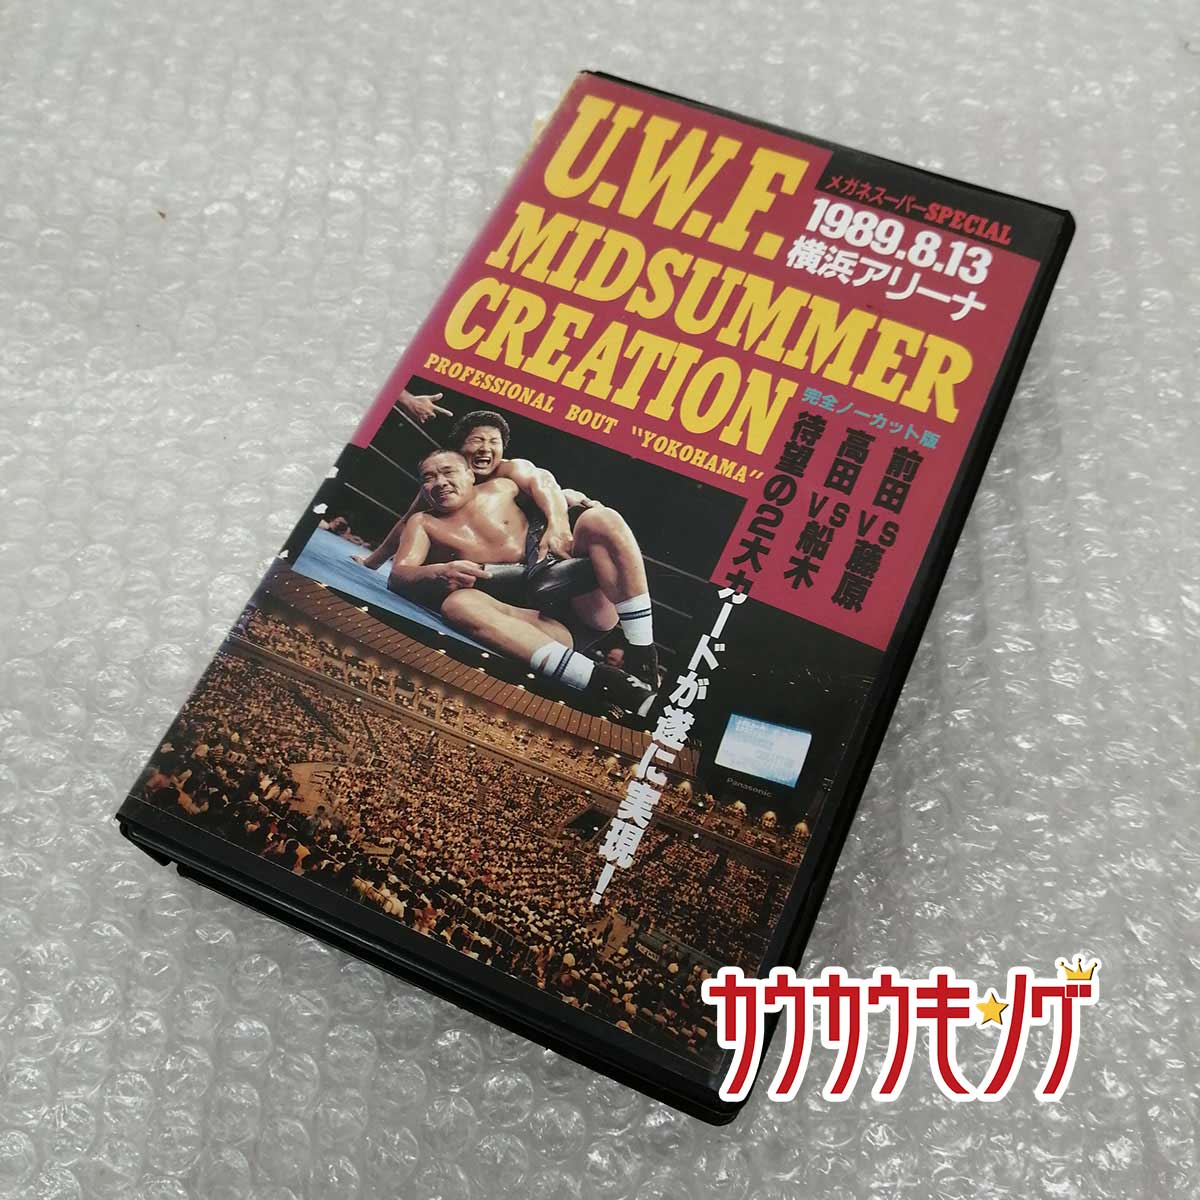 【中古】[VHS] U.W.F. MIDSUMMER CREATION 1989.8.13 横浜アリーナ SPA-4015 UWF ミッドサマークリエイション プロレス ビデオテープ